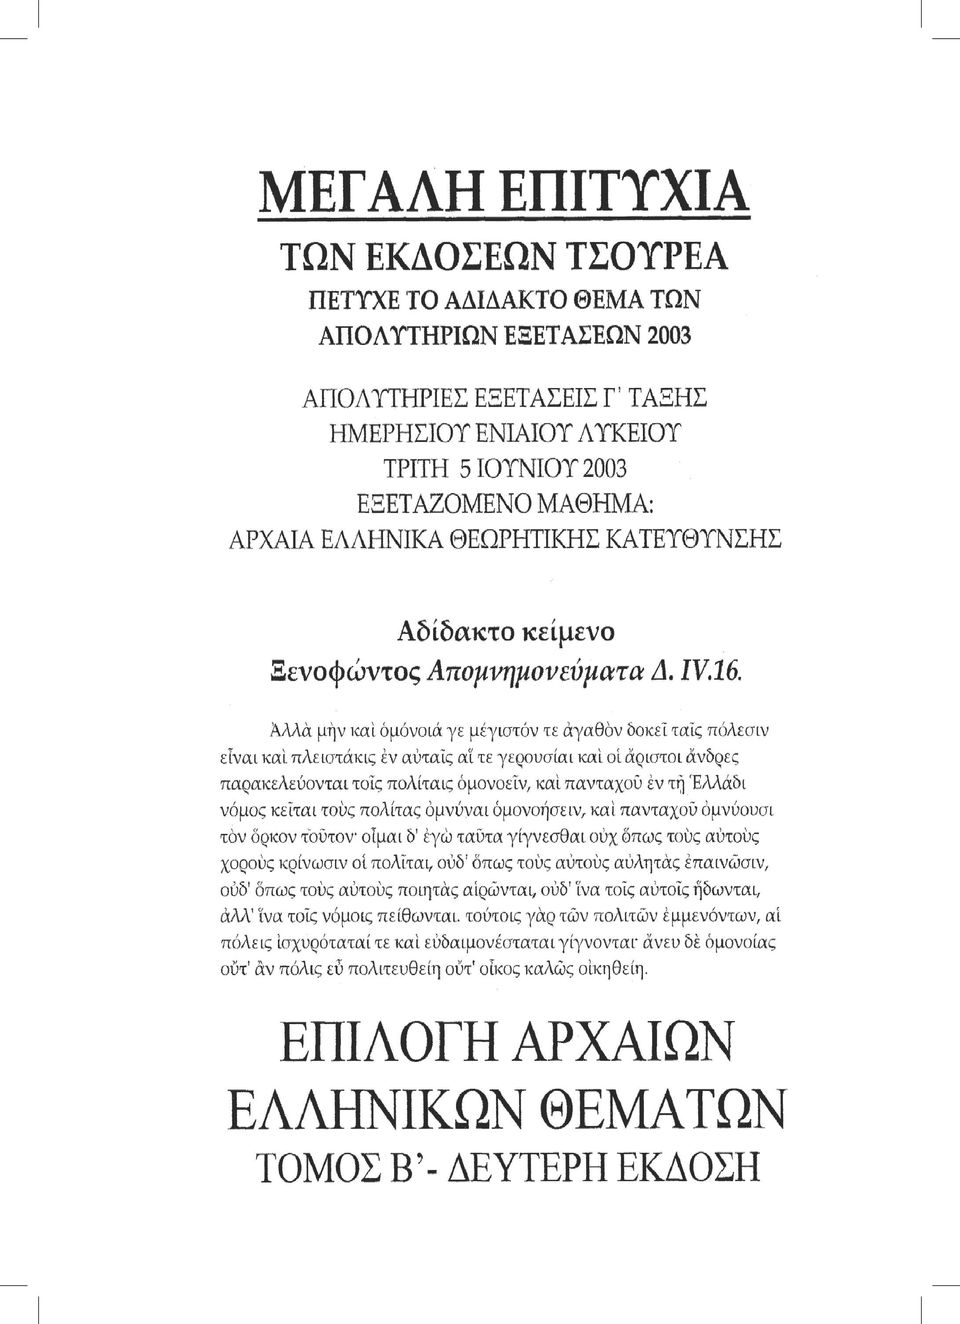 Αρχαία ελληνική Γραμματολογία/Γραμματεία 181.